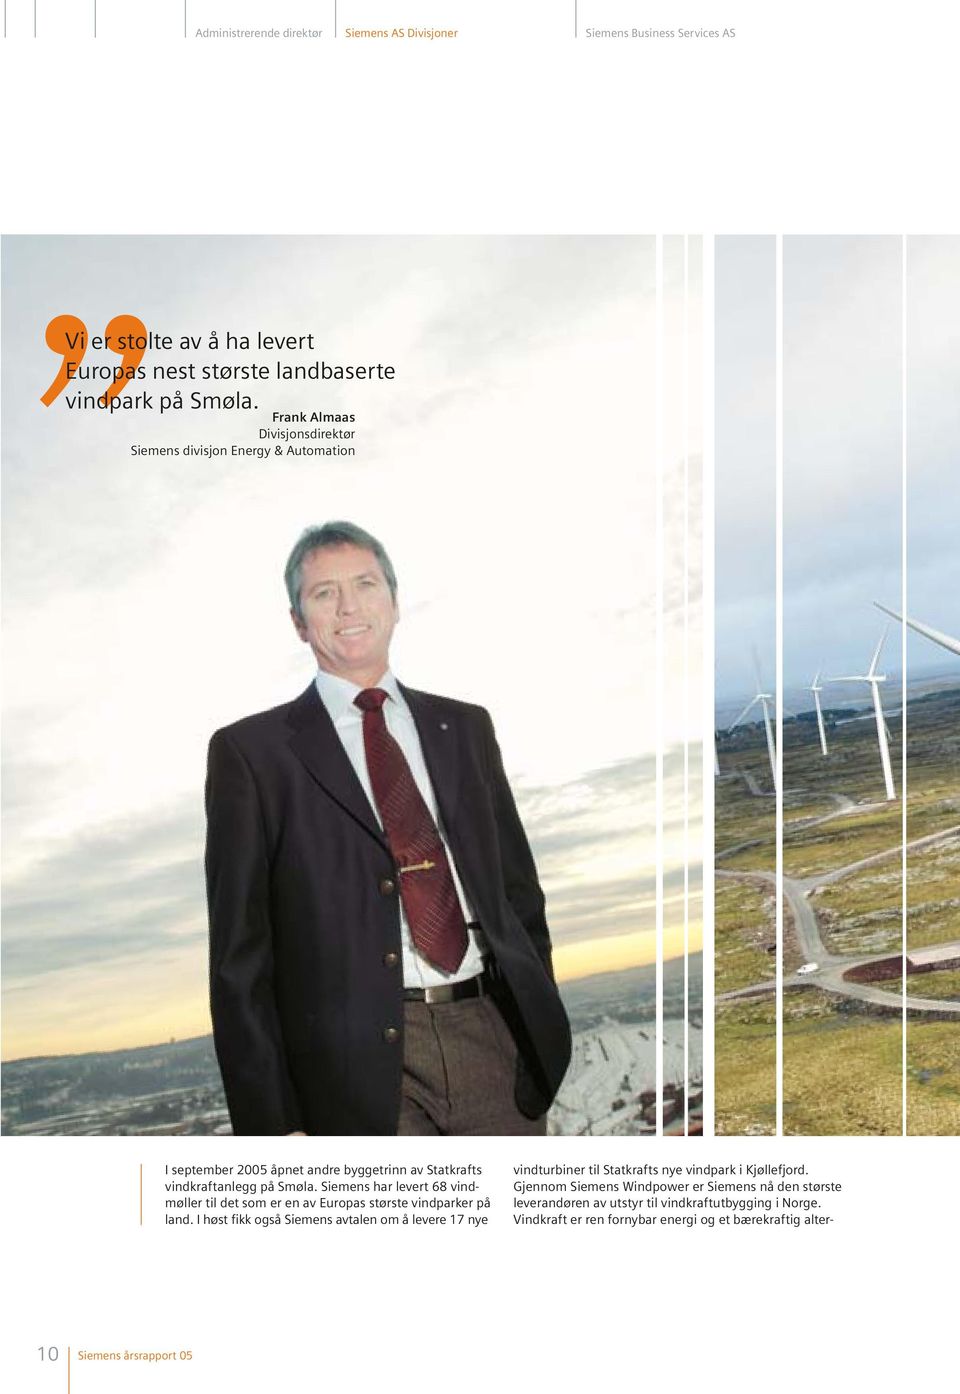 Siemens har levert 68 vindmøller til det som er en av Europas største vindparker på land.